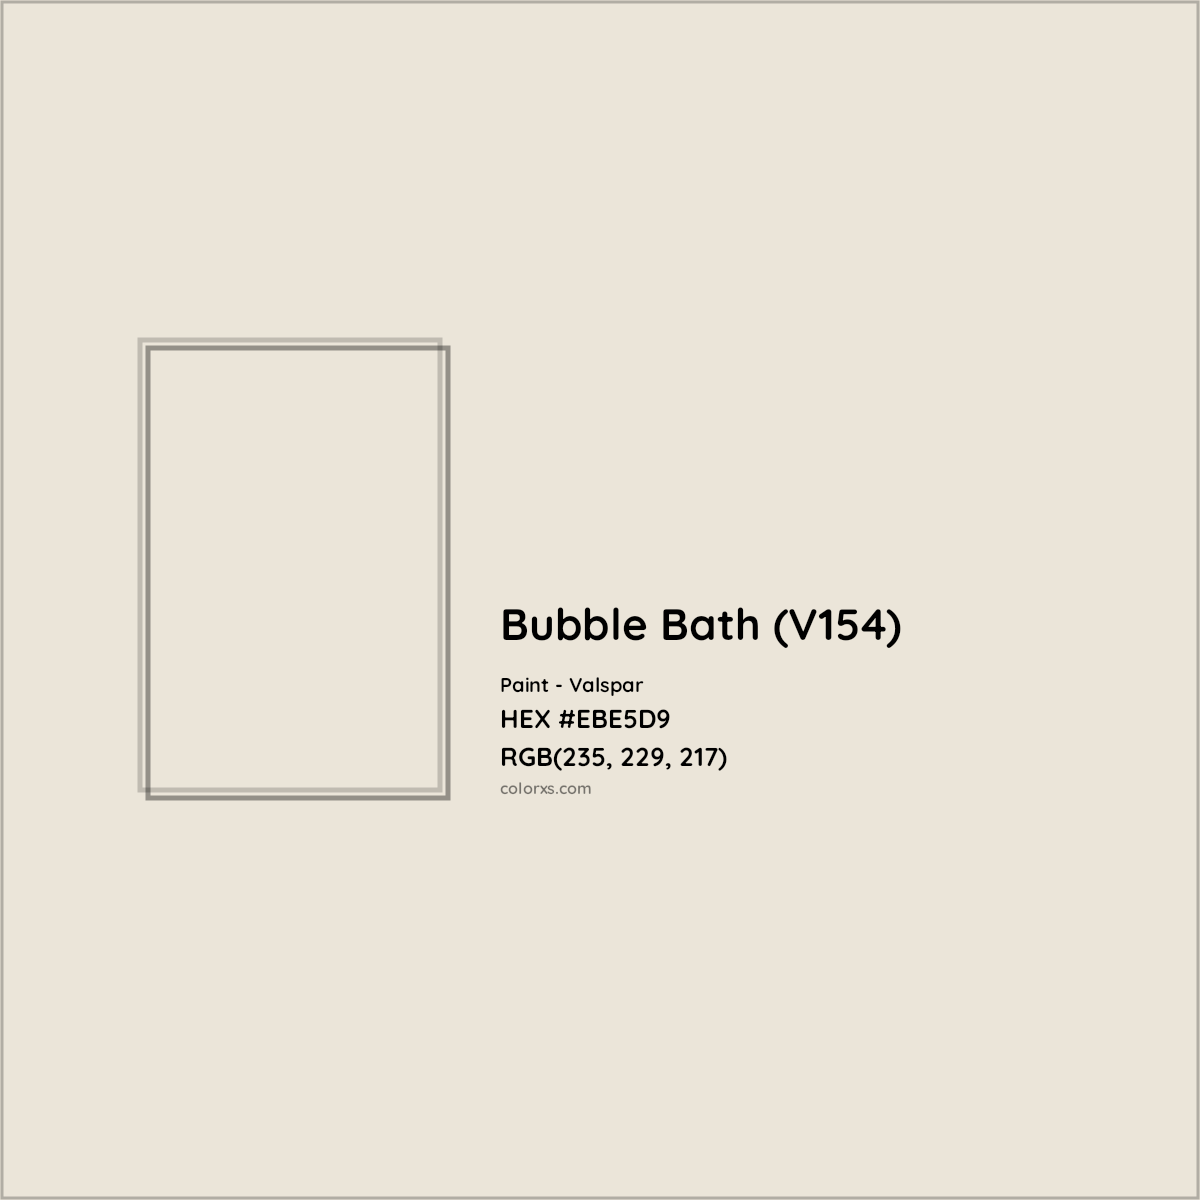 HEX #EBE5D9 Bubble Bath (V154) Paint Valspar - Color Code